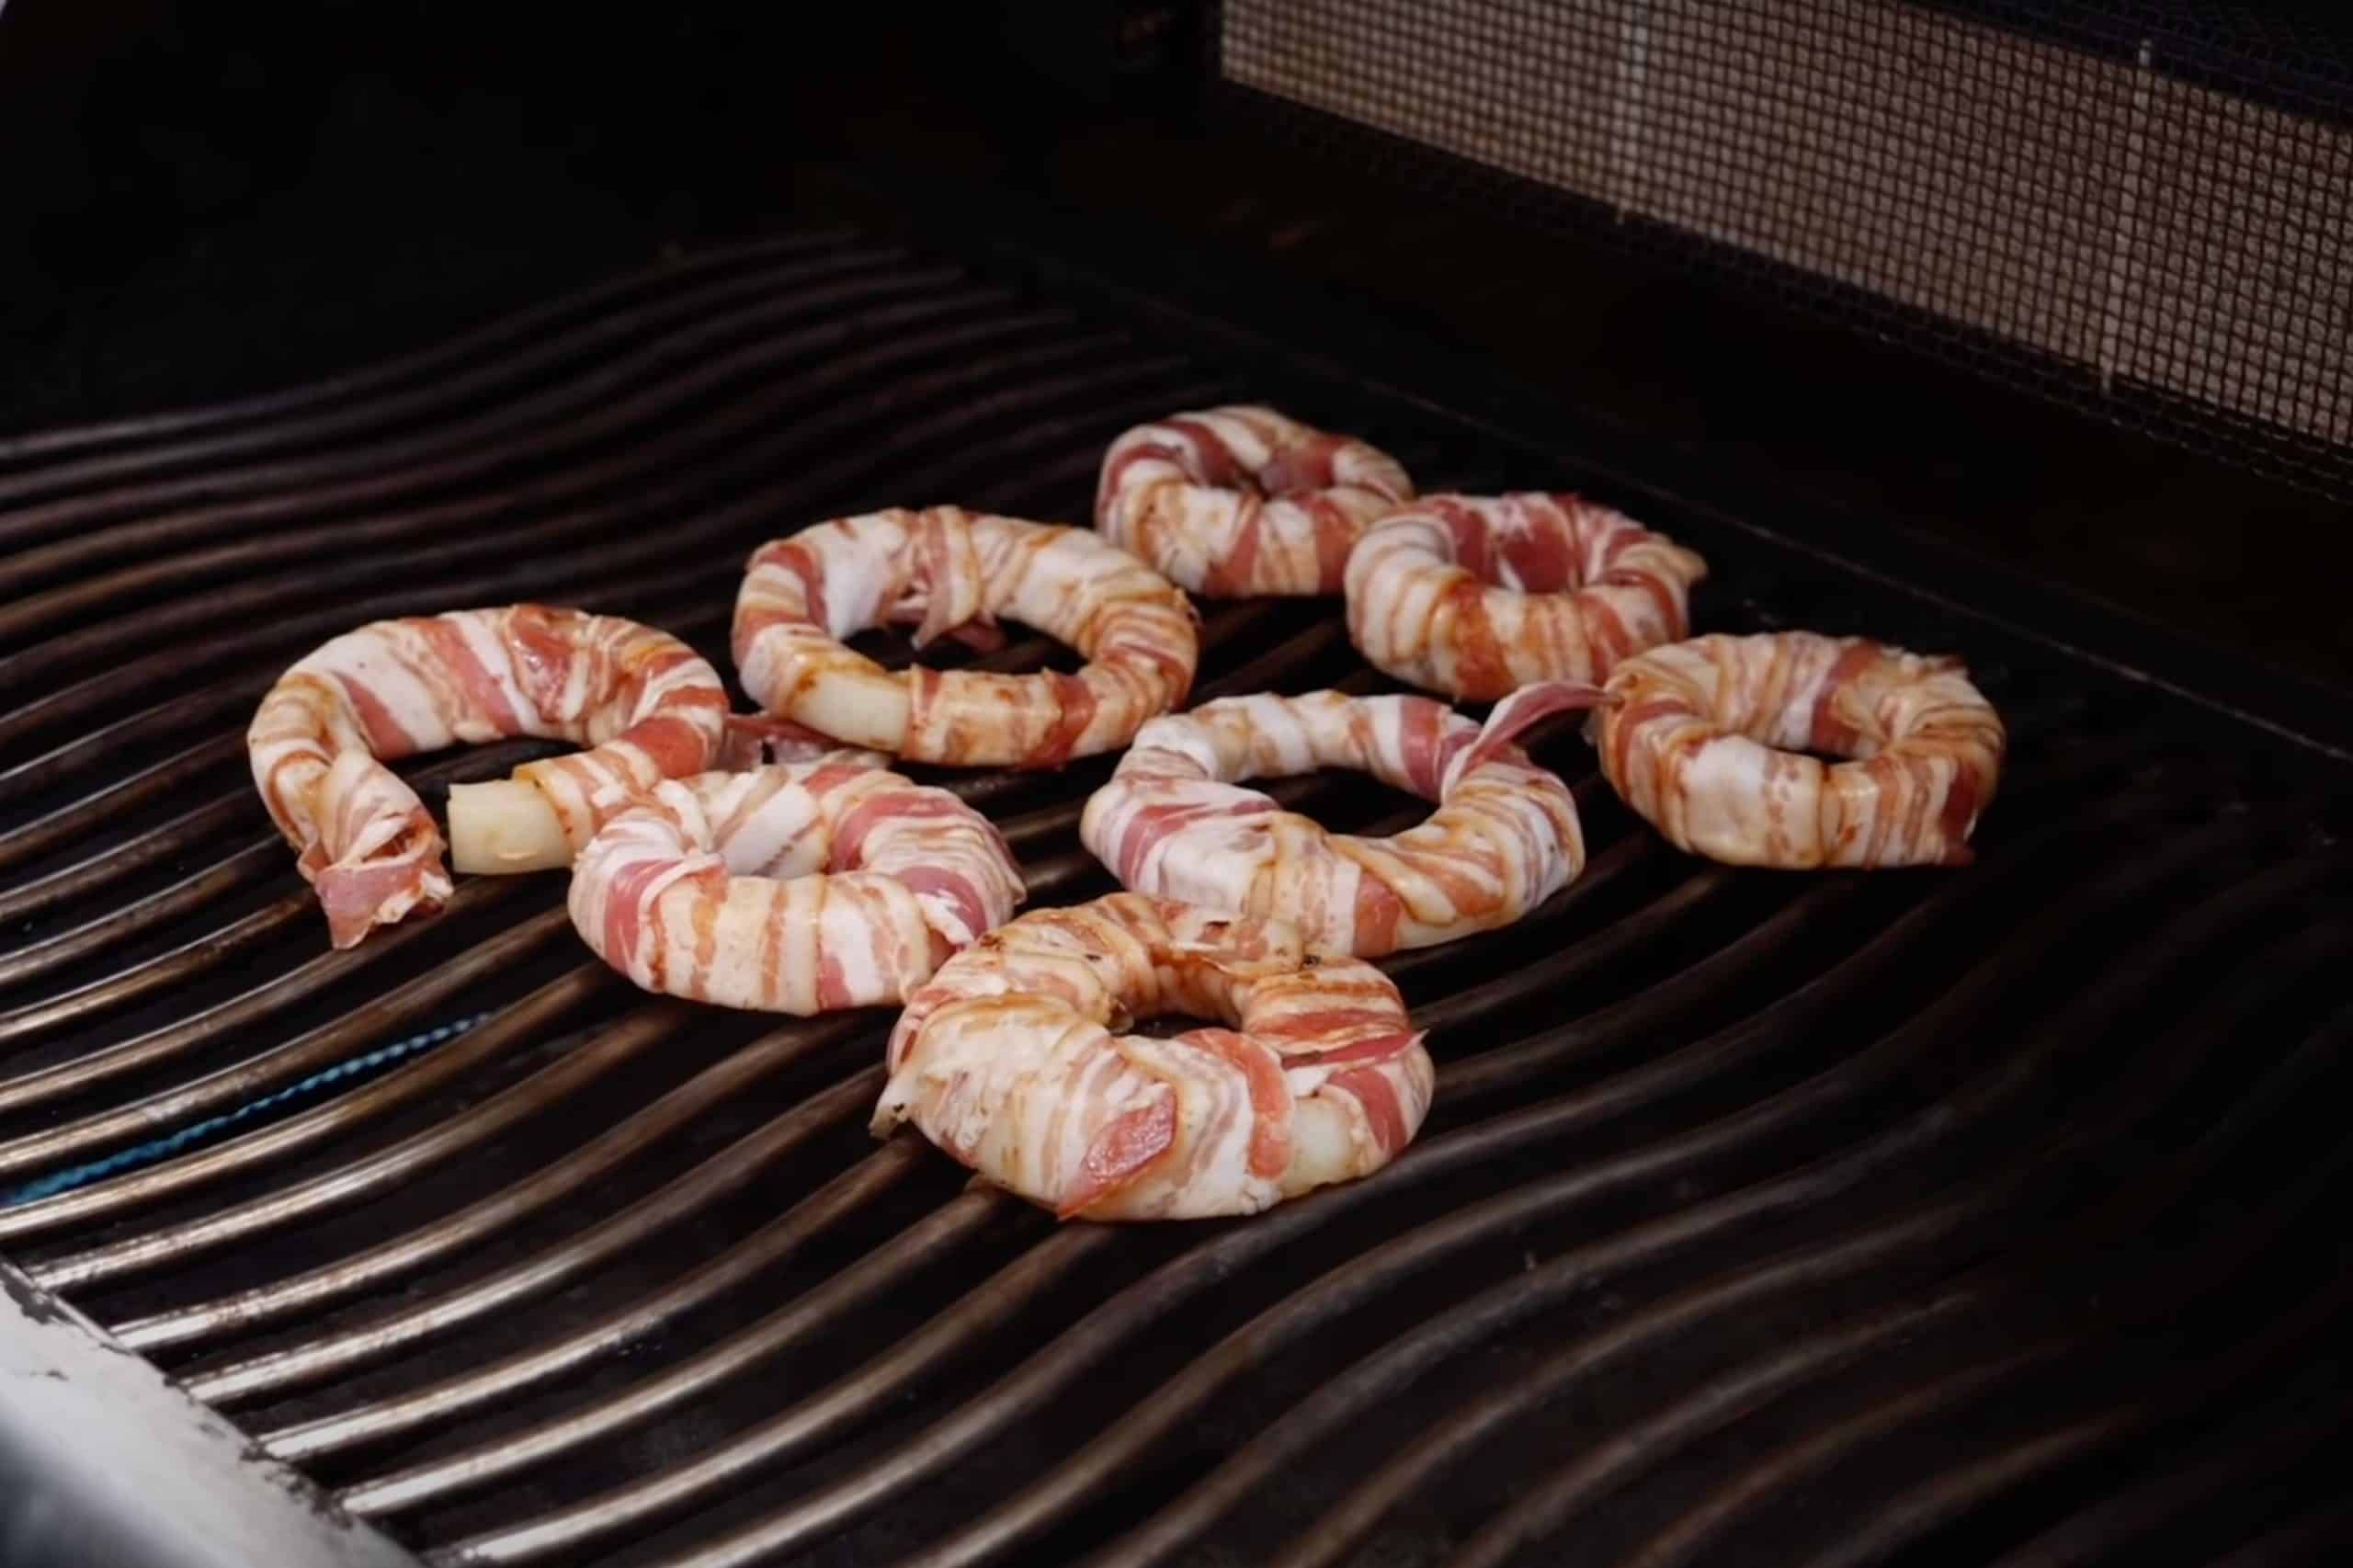 Bacon Zwiebel Ringe liegen auf dem Grill